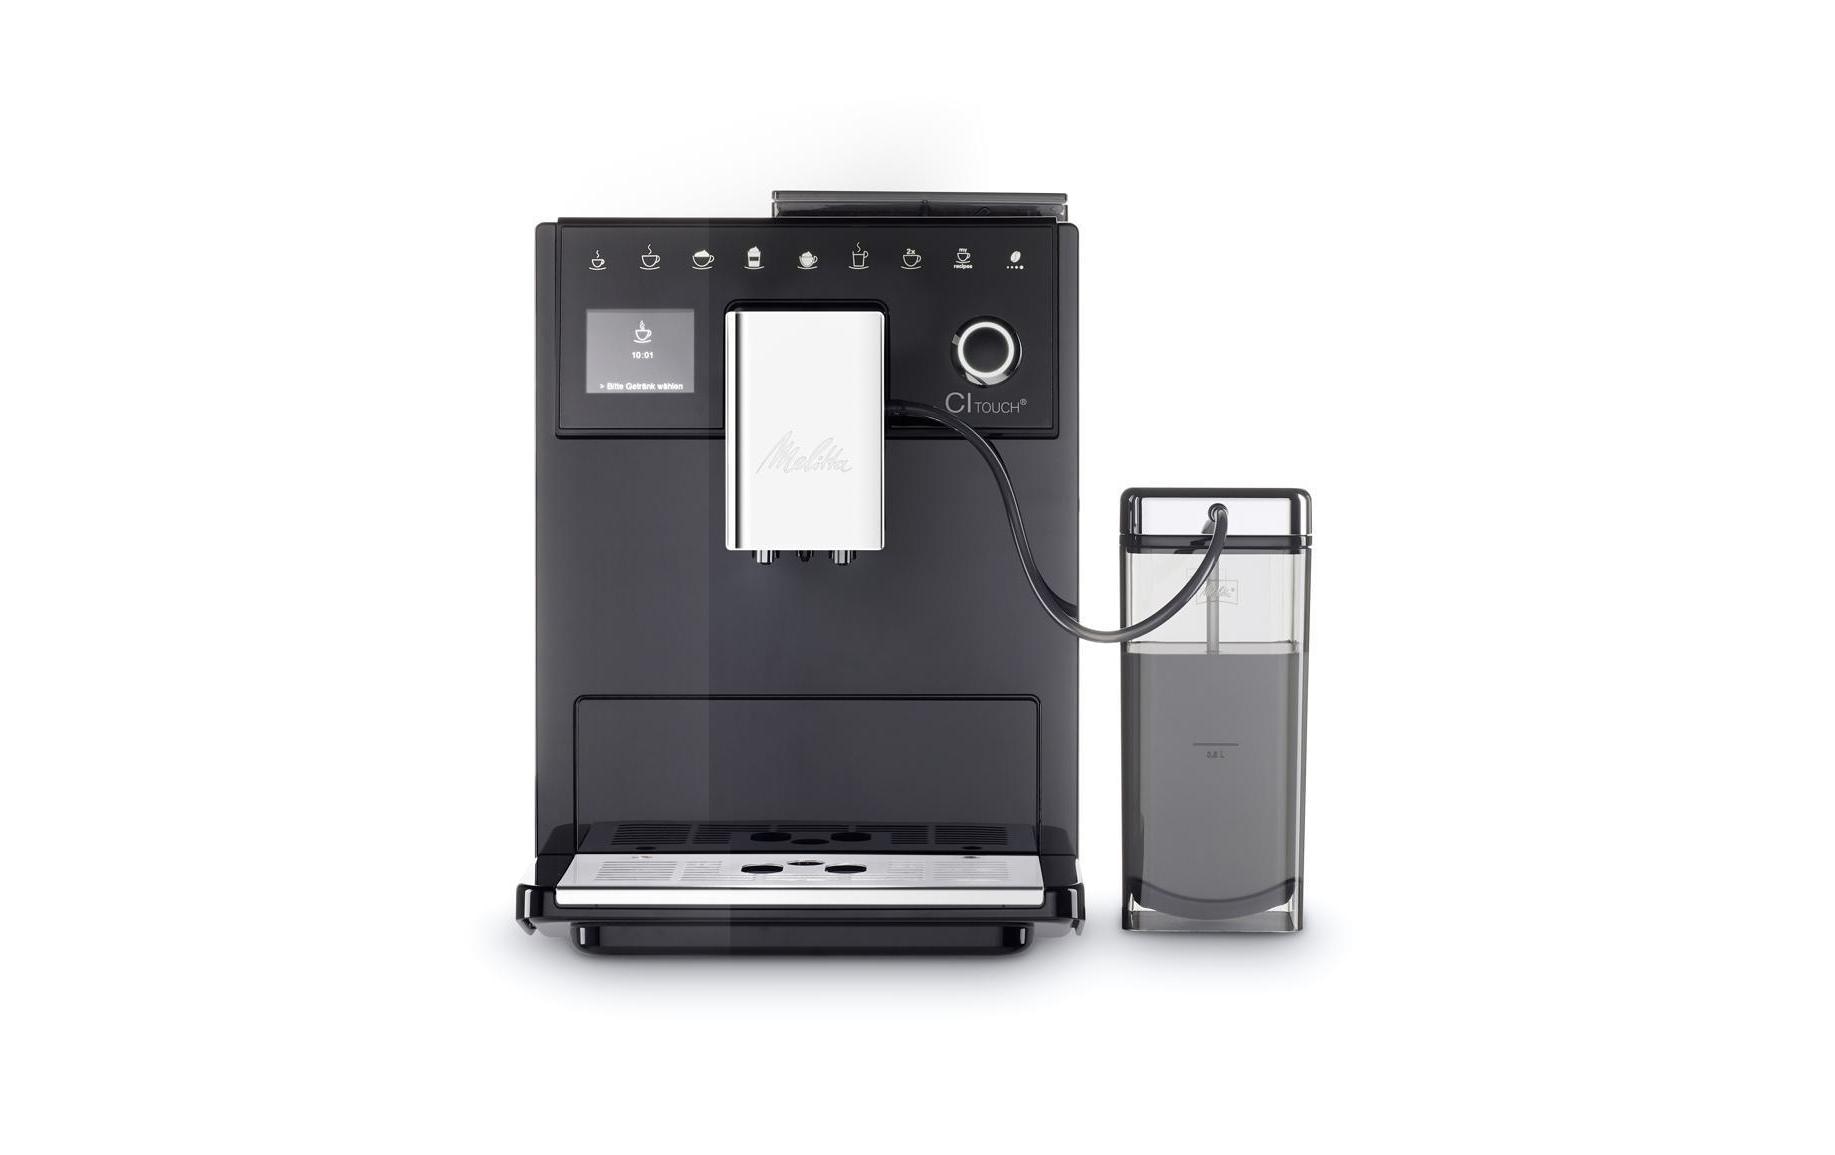 Melitta Kaffeevollautomat CI Touch F630-102 mit Pflegeset